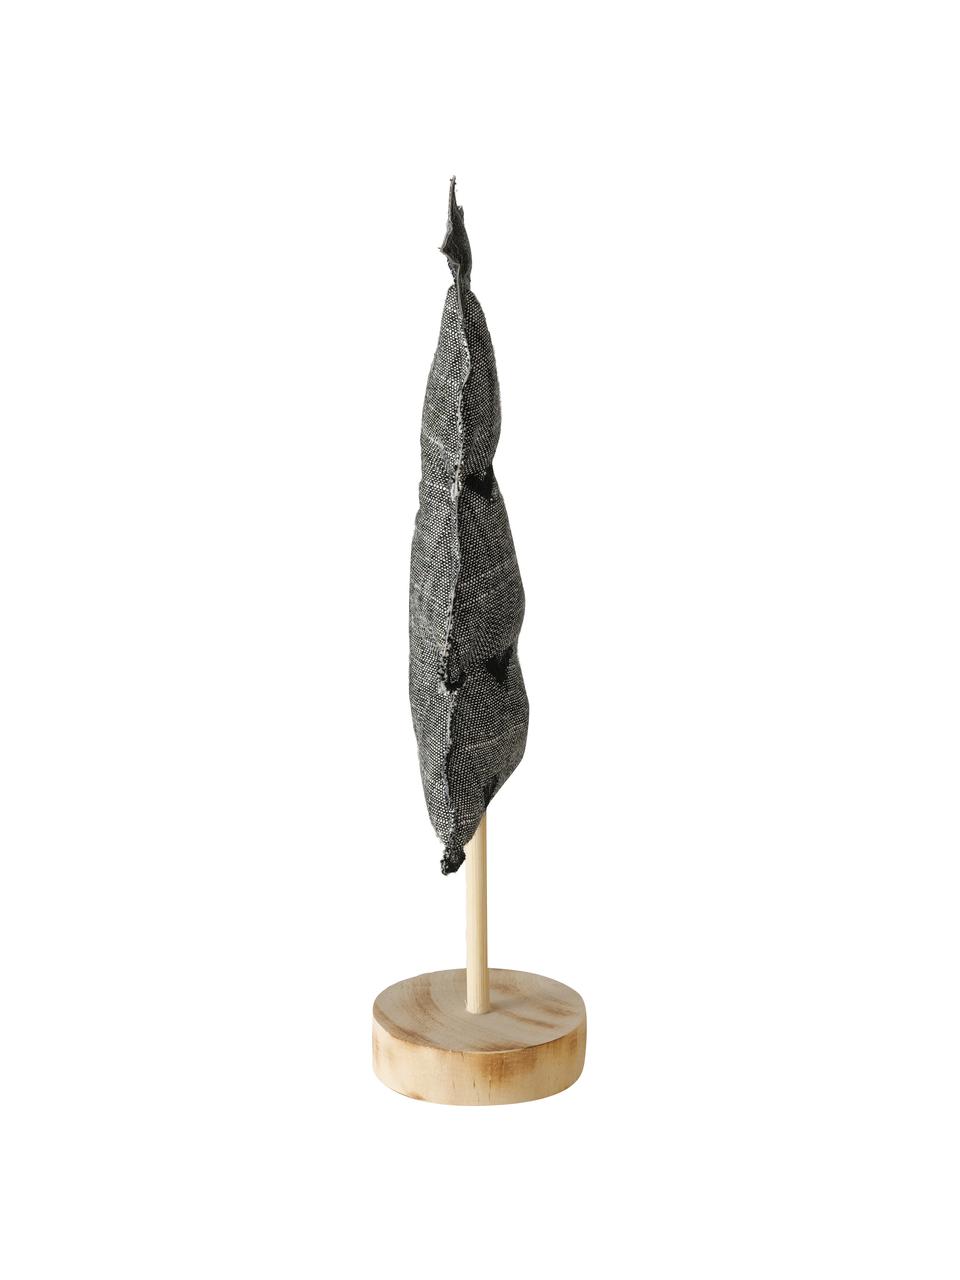 Komplet dekoracji Skagen, 4 elem., Szary, czarny, biały, jasny brązowy, S 13 x W 32 cm